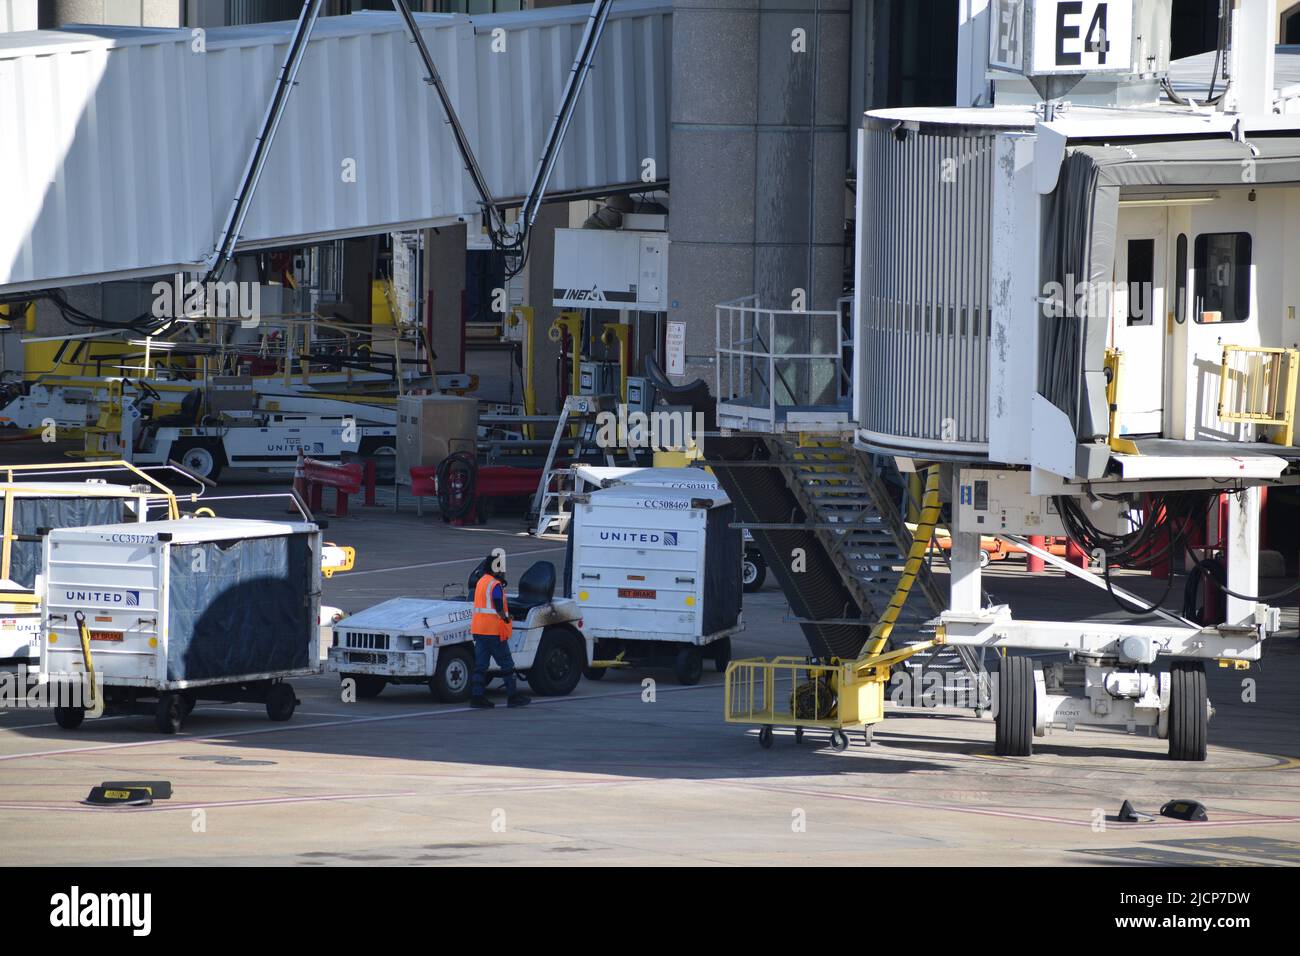 Un agente de servicio de rampa de United Airlines entre carros de equipaje fuera de la Terminal E en el Aeropuerto Internacional Dallas-Fort Worth (Aeropuerto DFW) Foto de stock